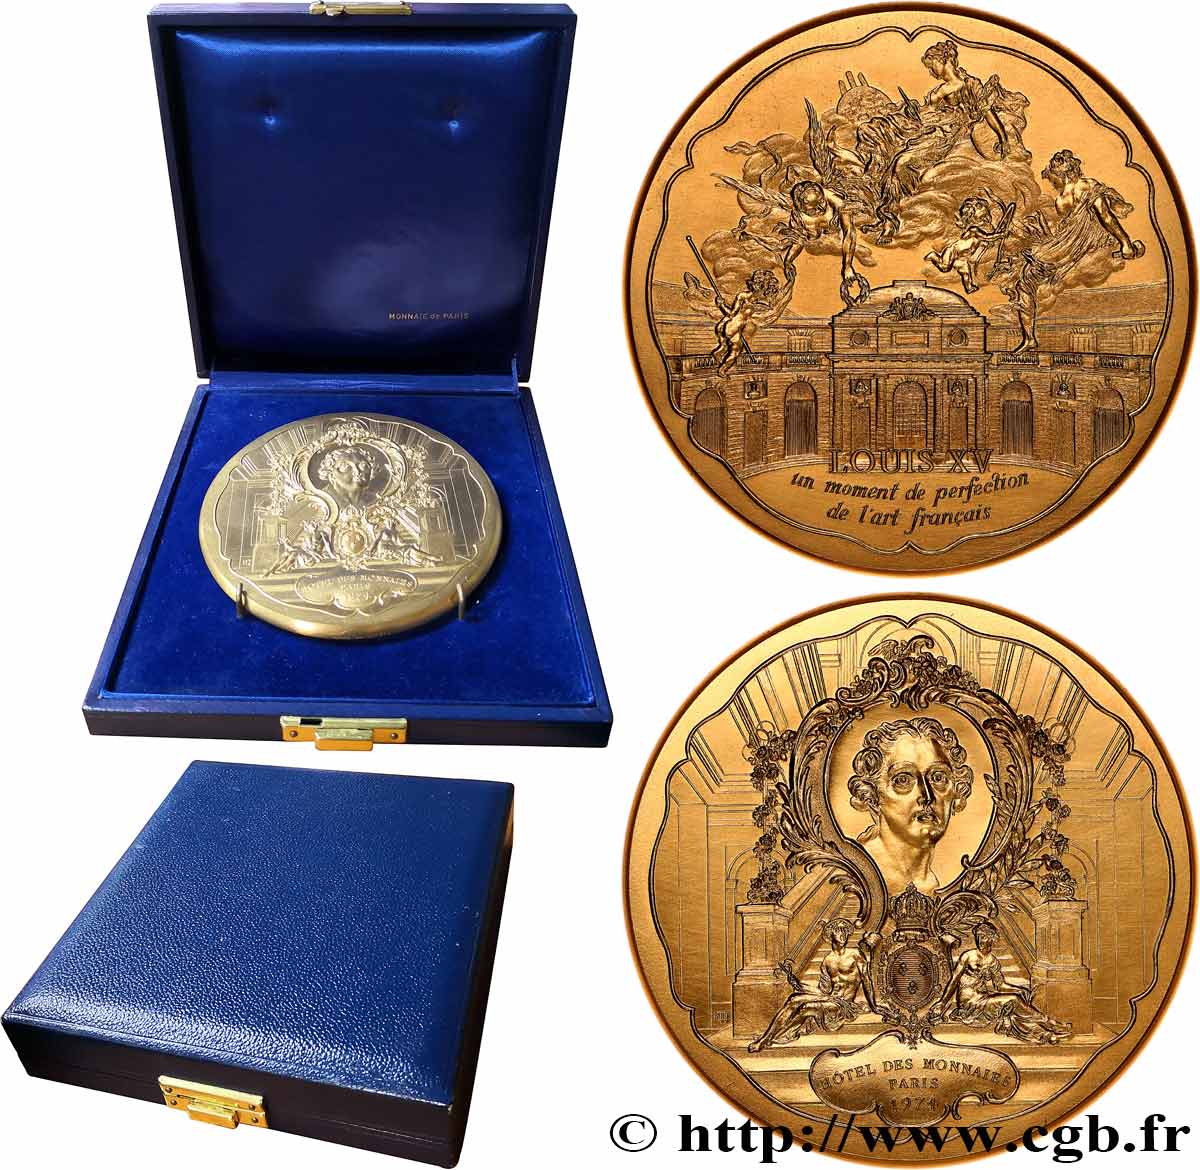 QUINTA REPUBLICA FRANCESA Médaille, Louis XV, un moment de perfection de l’art français, Exemplaire Editeur SC